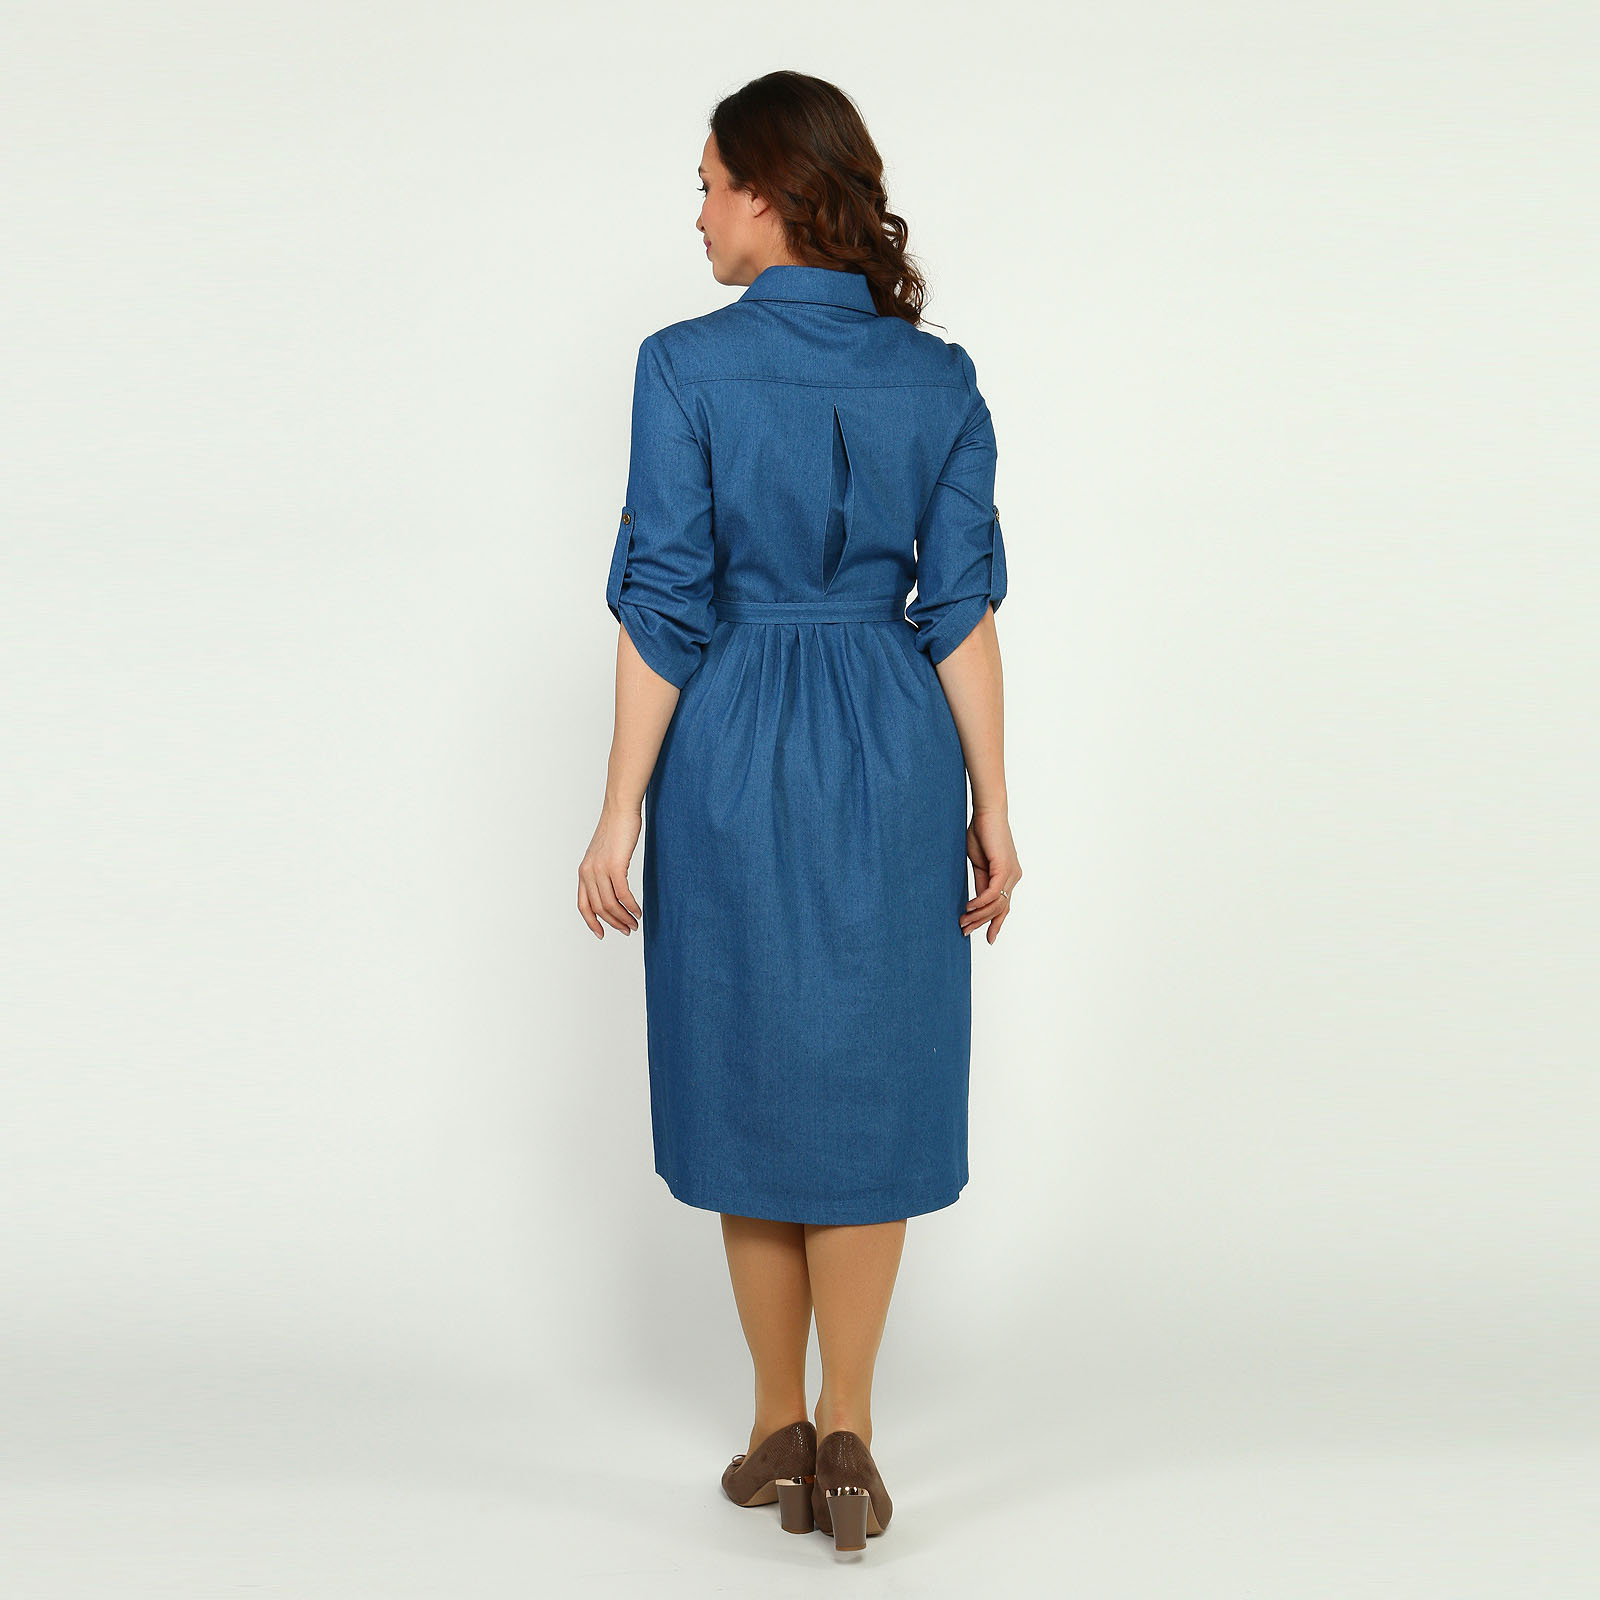 Платье-рубашка из джинсовой ткани Elletto Life, размер 54, цвет голубой - фото 10